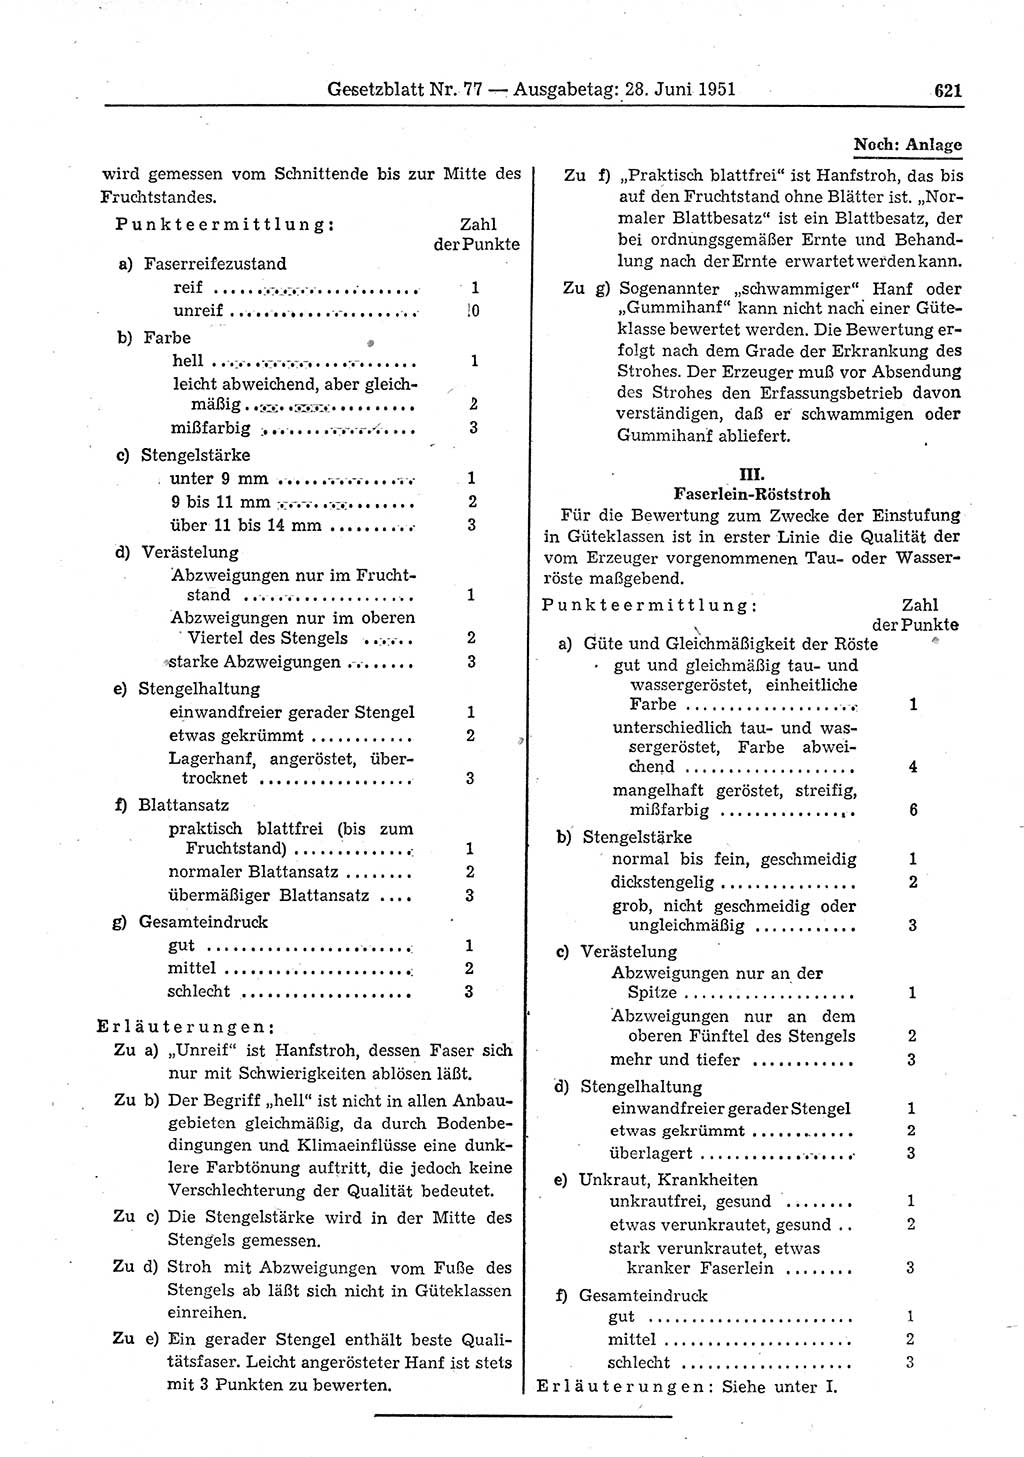 Gesetzblatt (GBl.) der Deutschen Demokratischen Republik (DDR) 1951, Seite 621 (GBl. DDR 1951, S. 621)